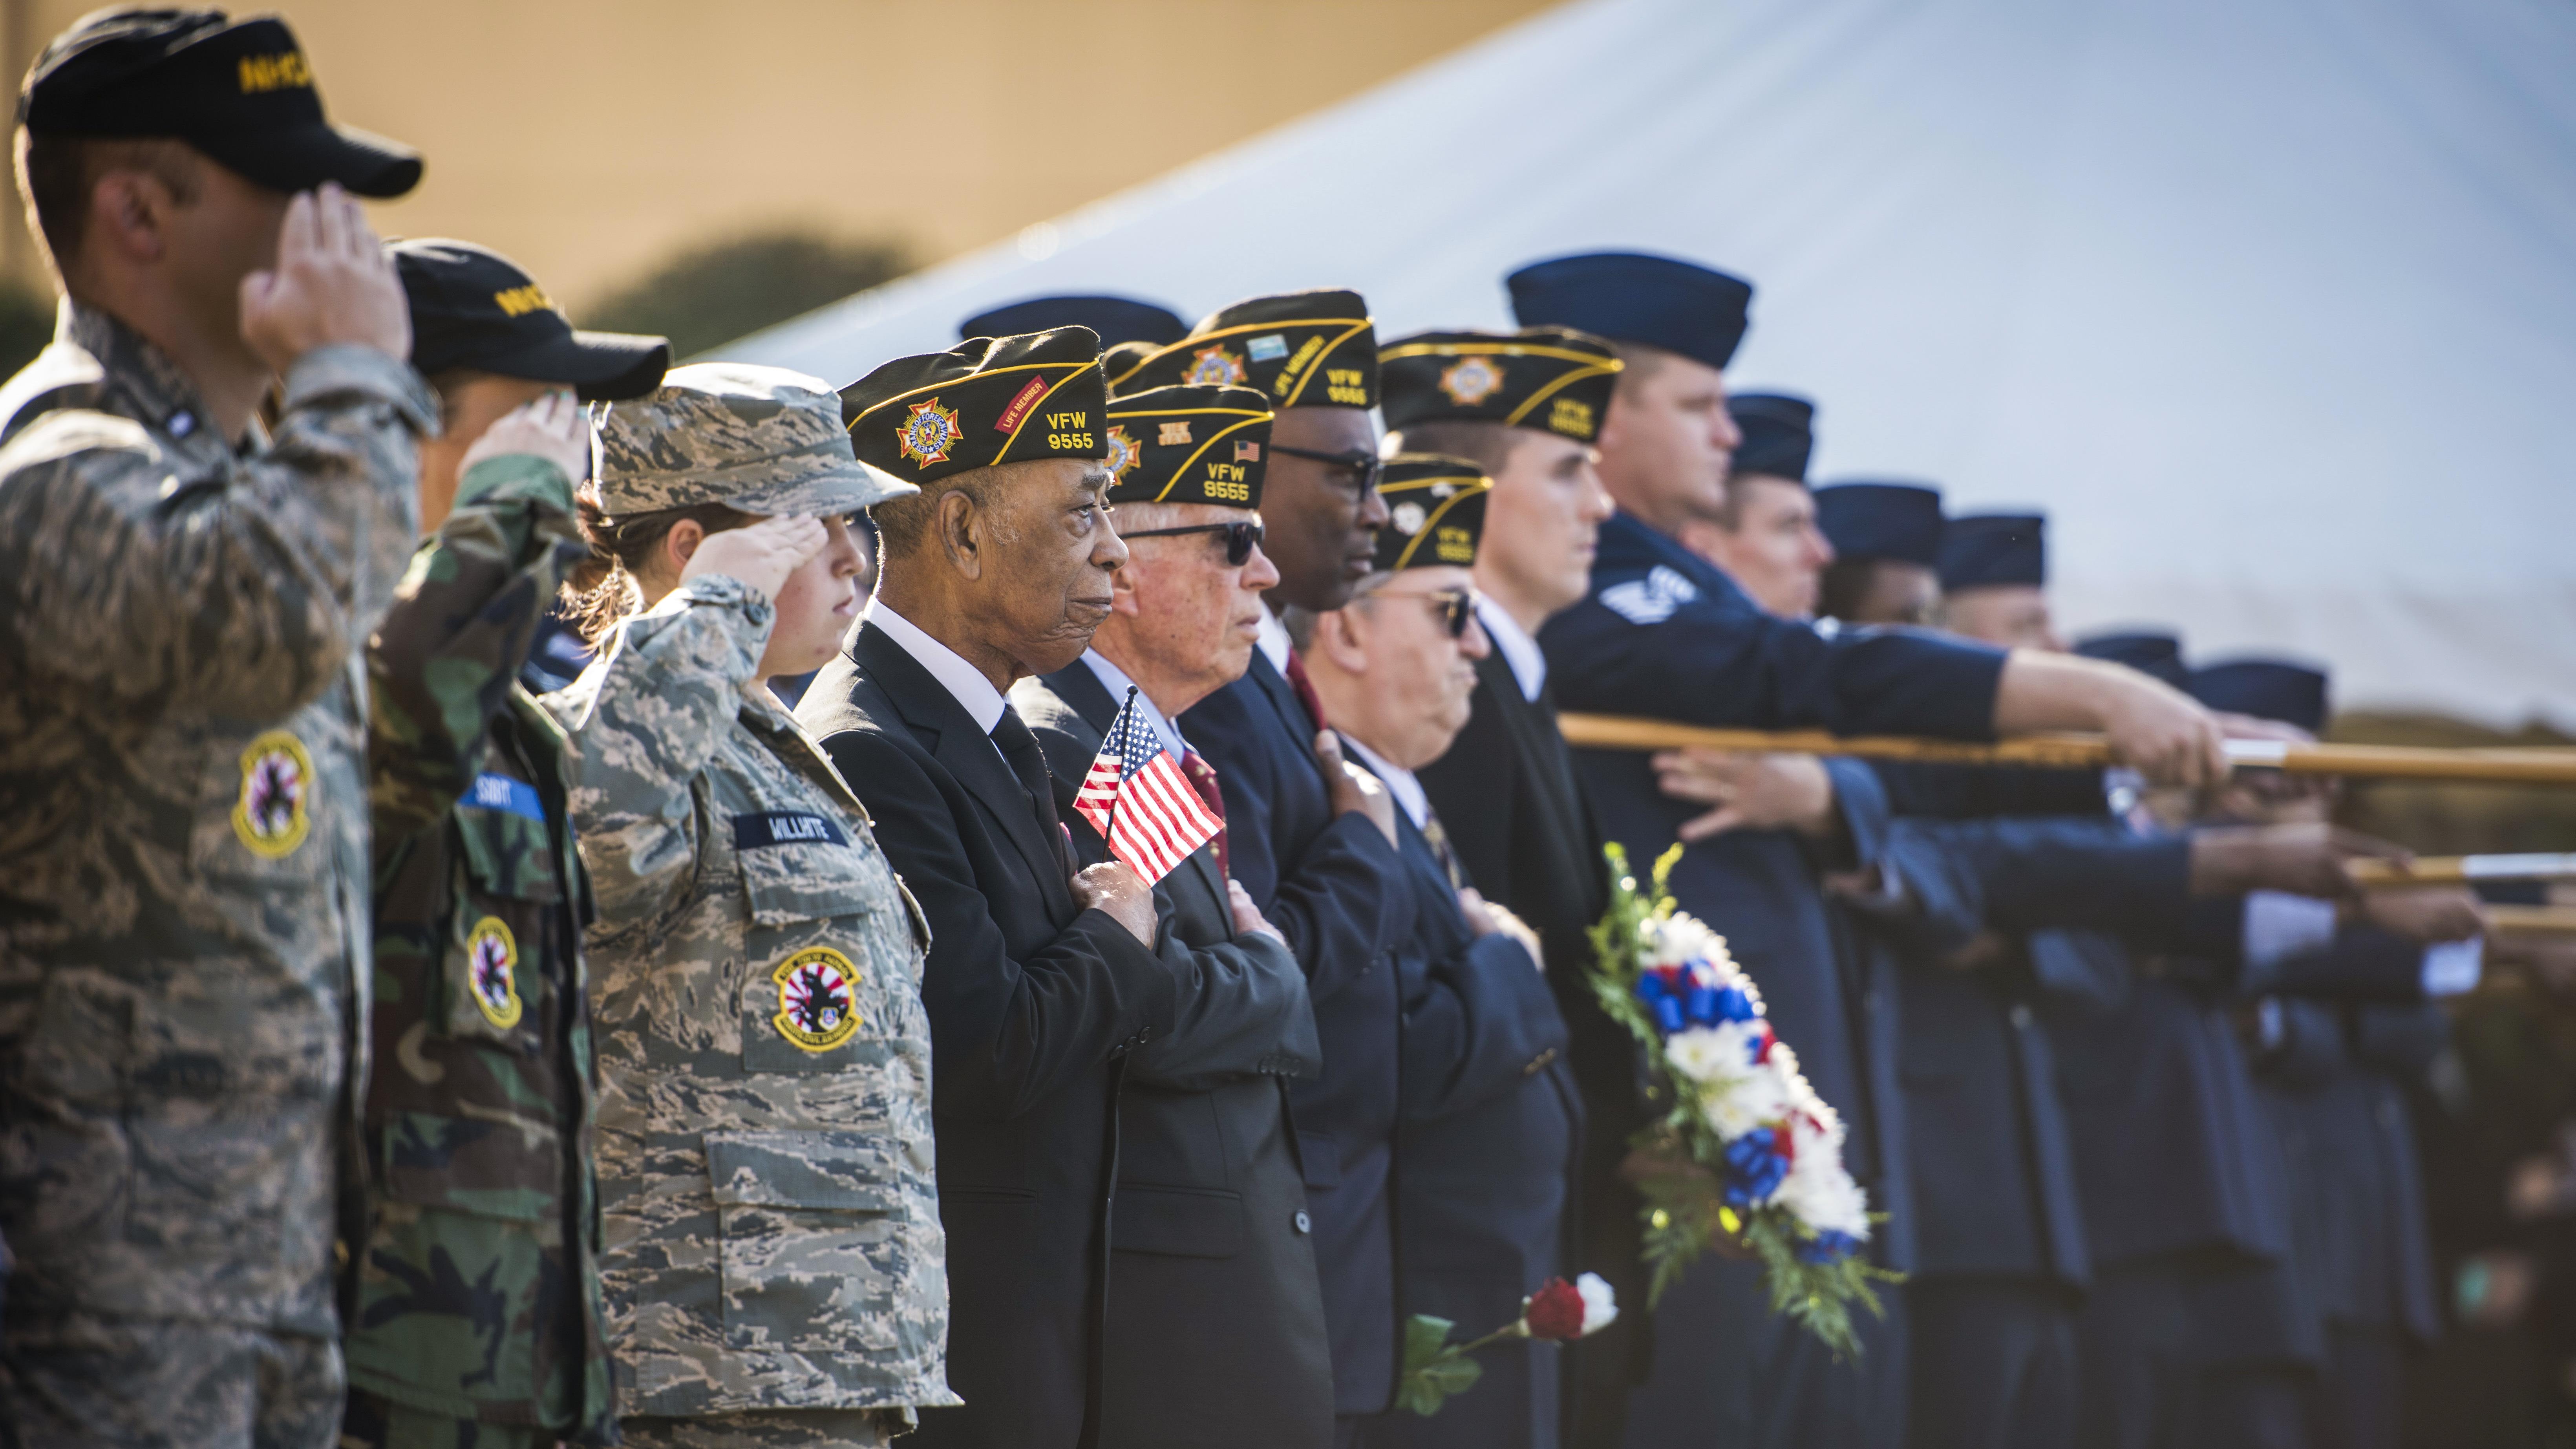 Saluting Veterans